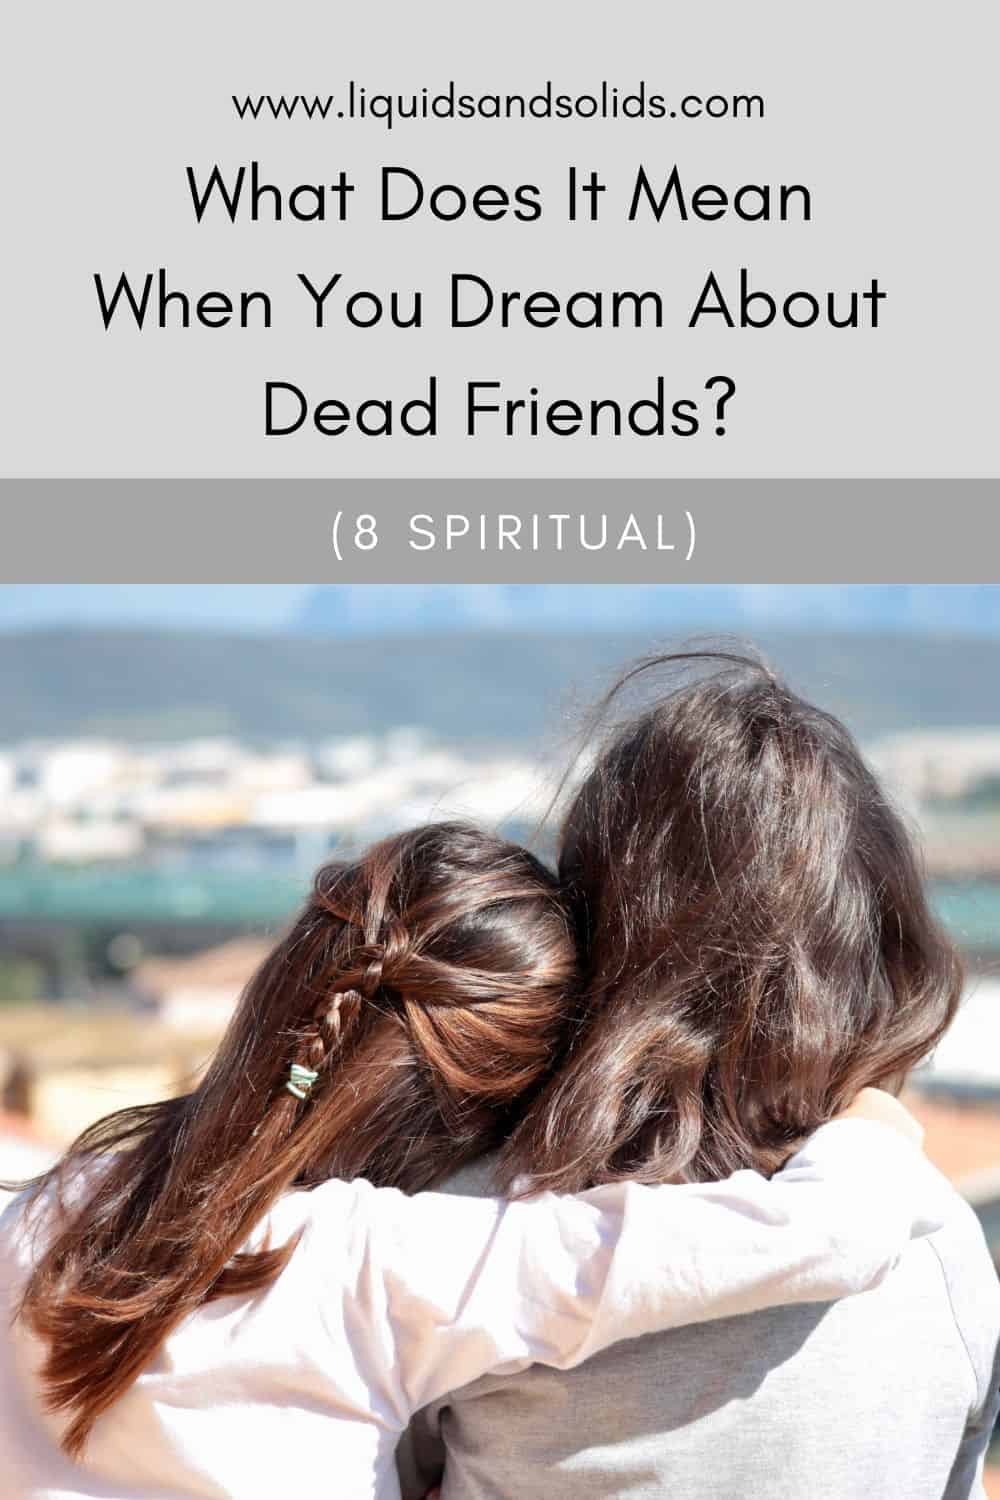  ოცნებობთ გარდაცვლილ მეგობრებზე? (8 სულიერი მნიშვნელობა)